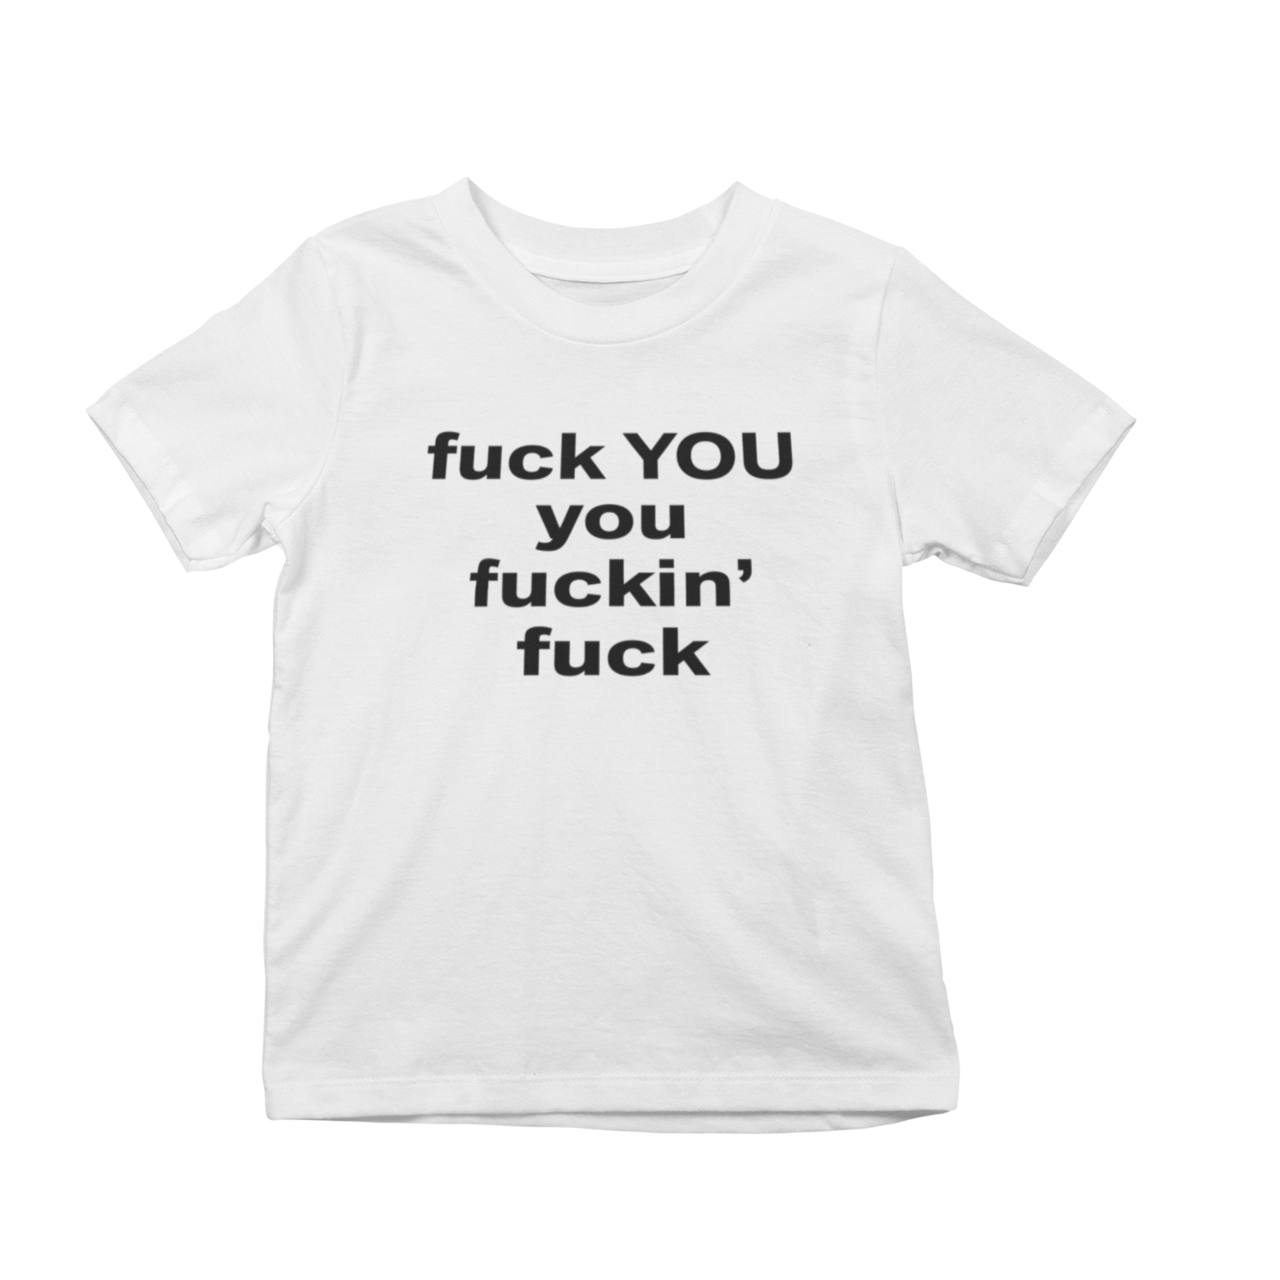 Fuck You You Fuckin’ Fuck T-Shirt